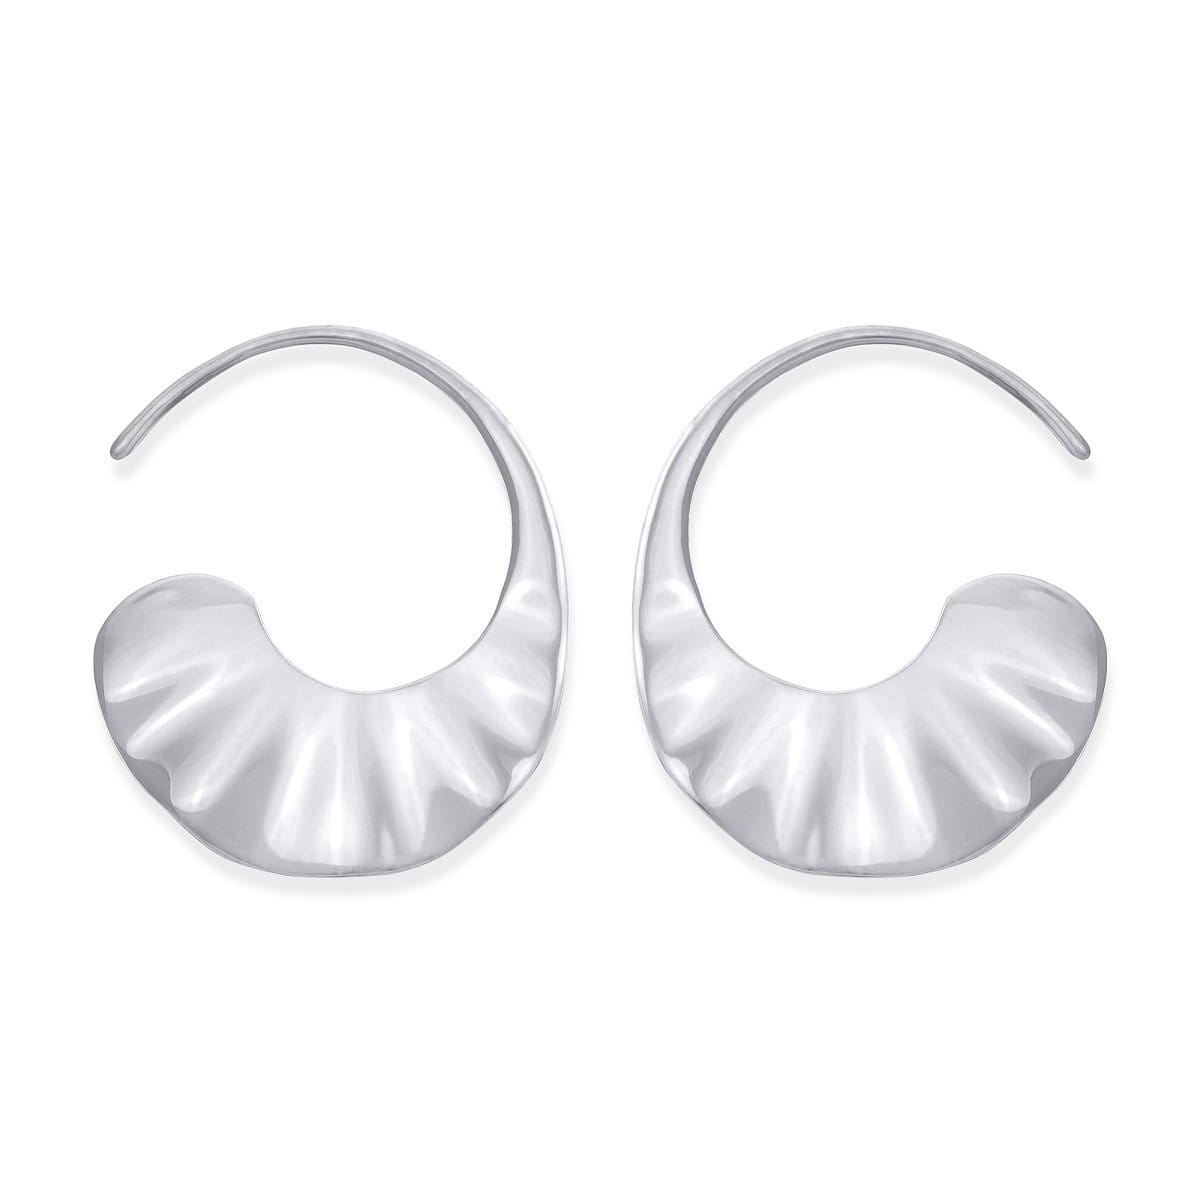 Boma Jewelry Earrings Sterling Silver Veora Hoops